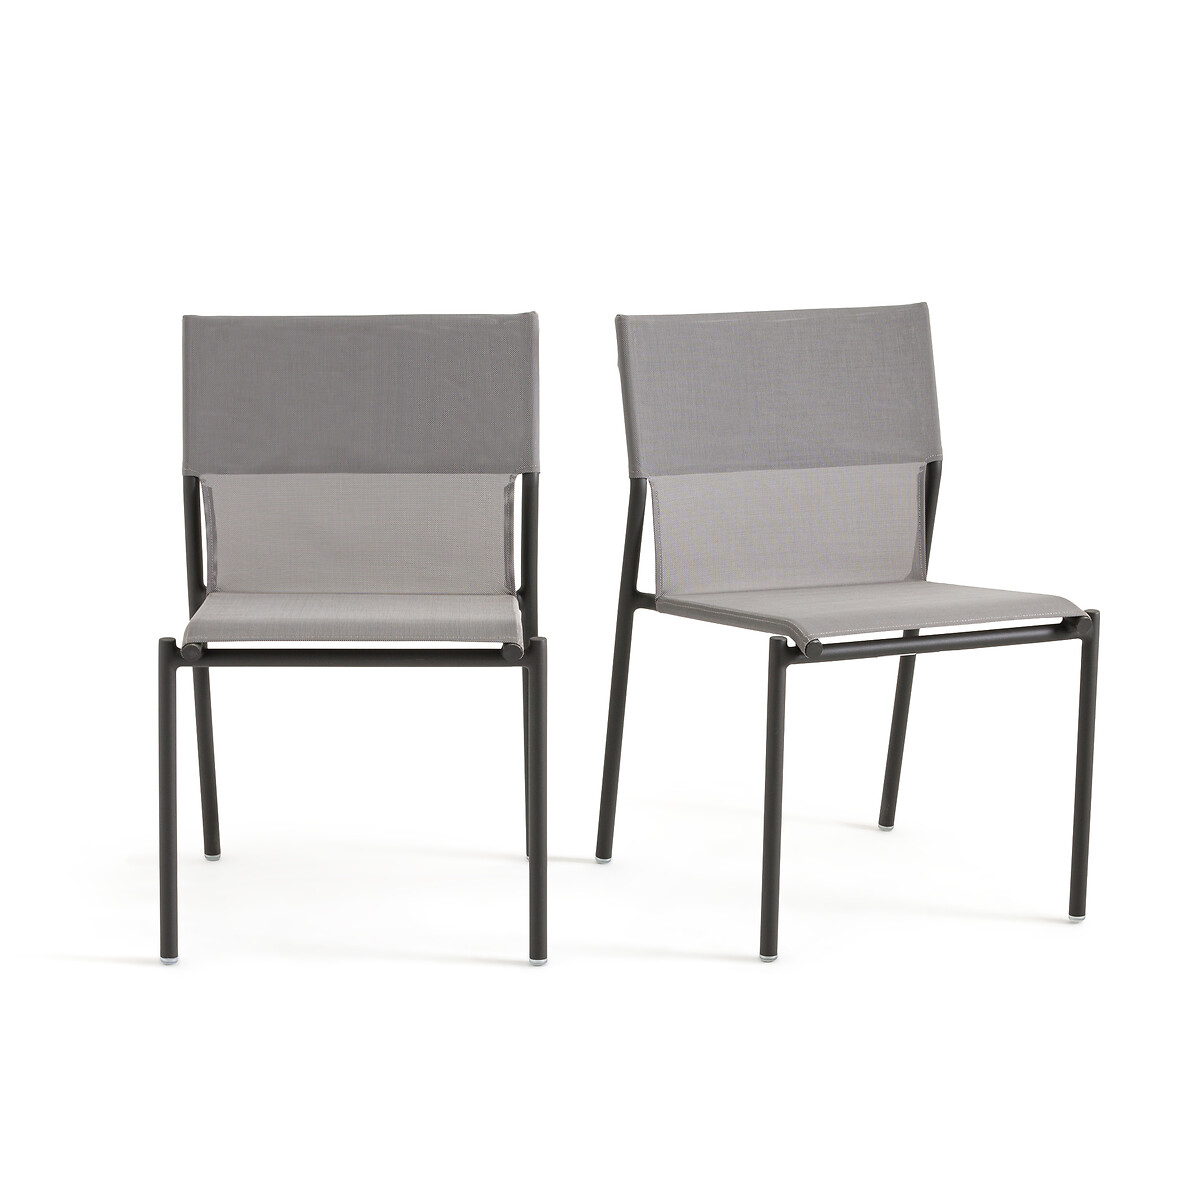 Σετ 2 καρέκλες κήπου από αλουμίνιο Μ62xΠ53xΥ84cm